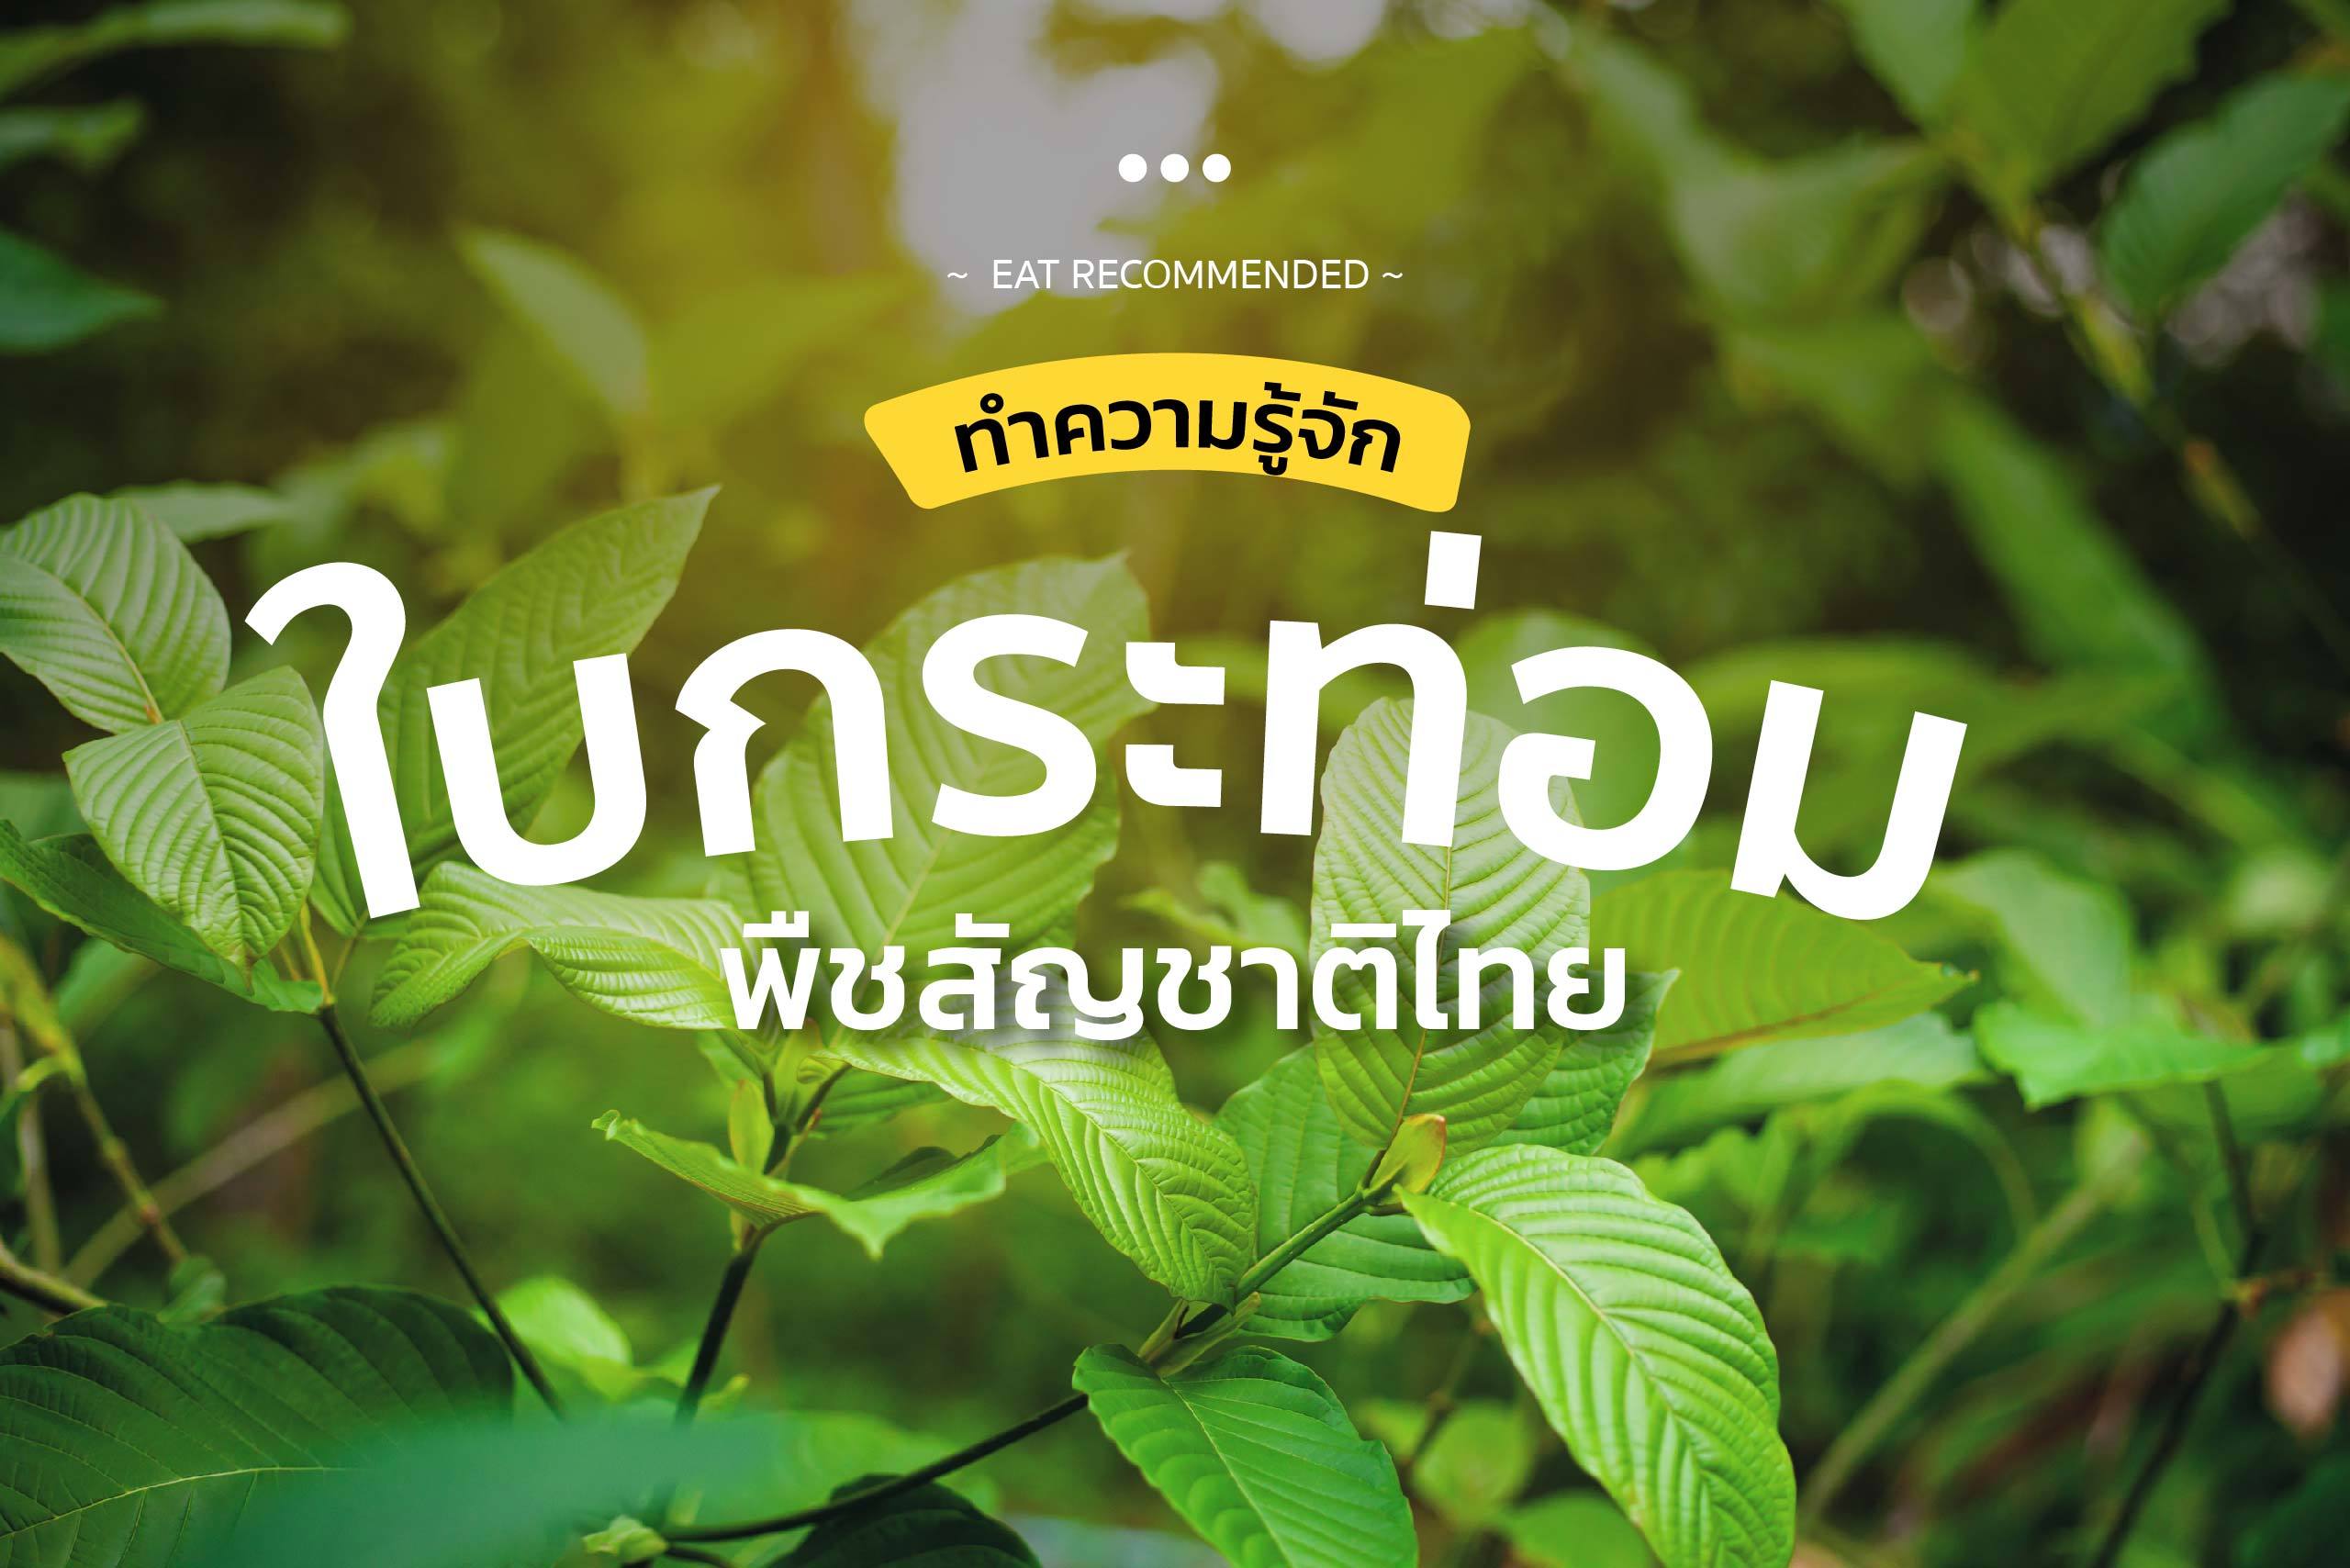 ทำความรู้จัก "ใบกระท่อม" พืชสัญชาติไทย